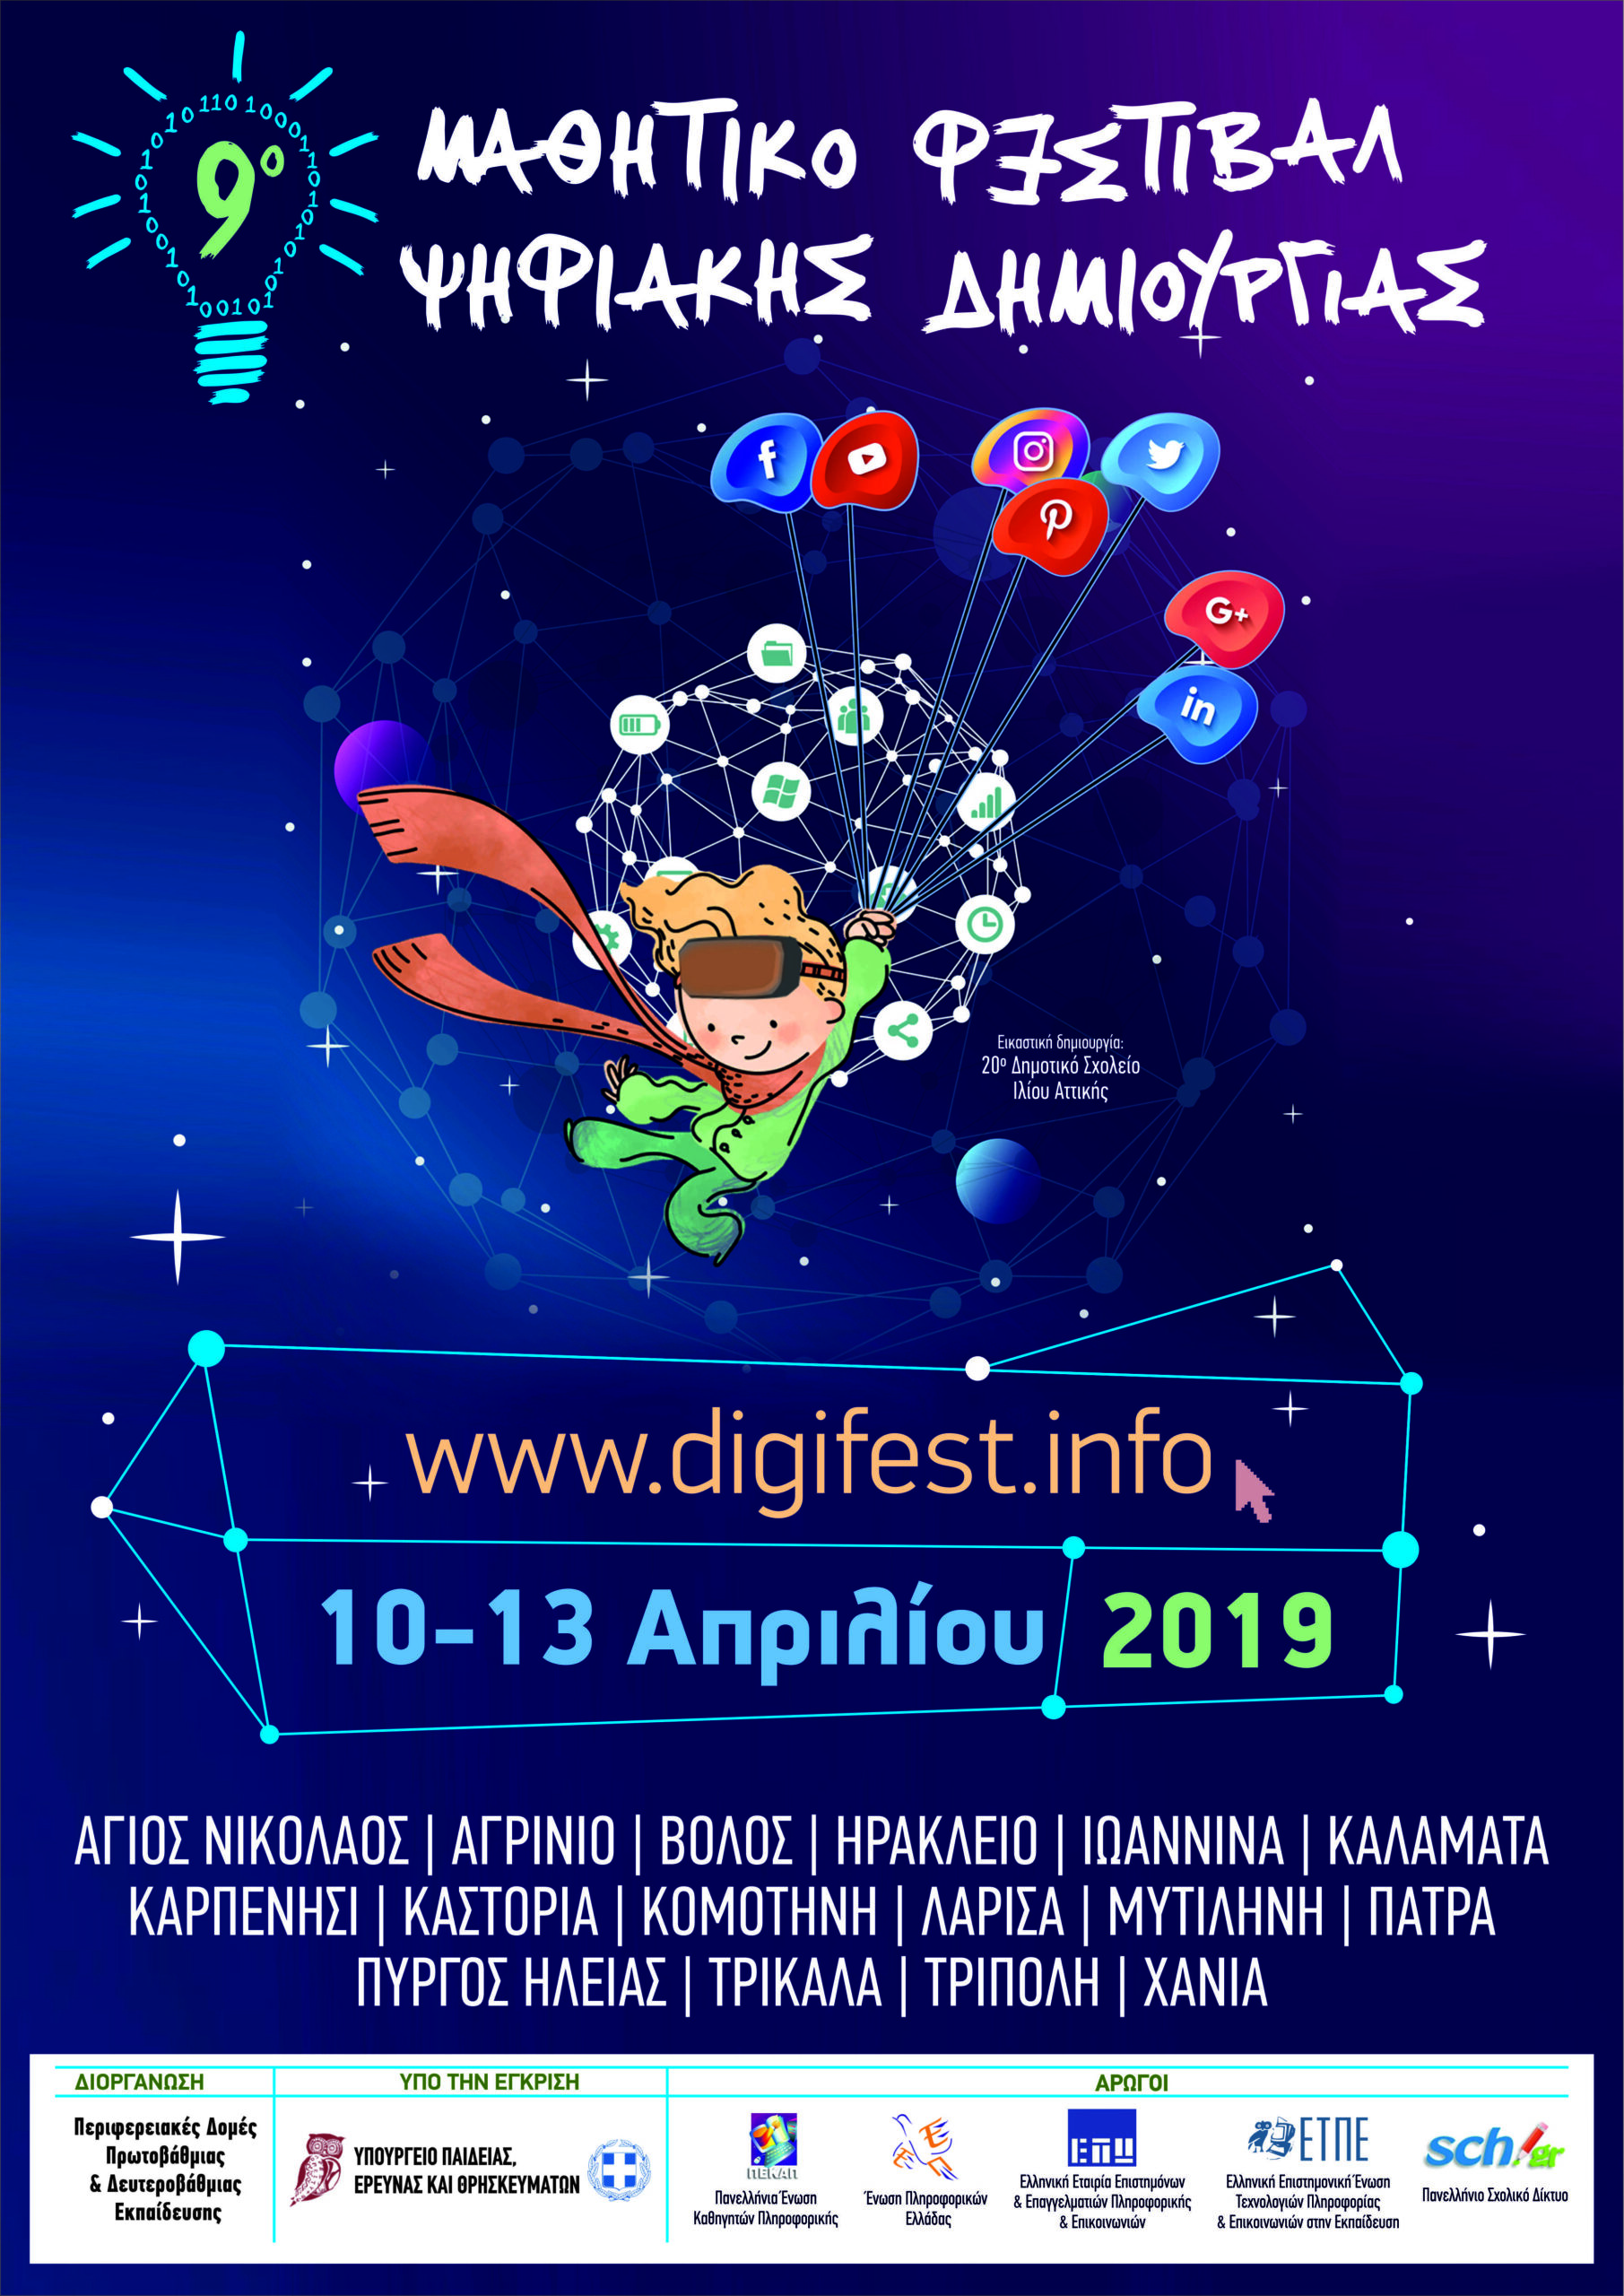 Ψηφιακό Μαθητικό Φεστιβάλ 2019